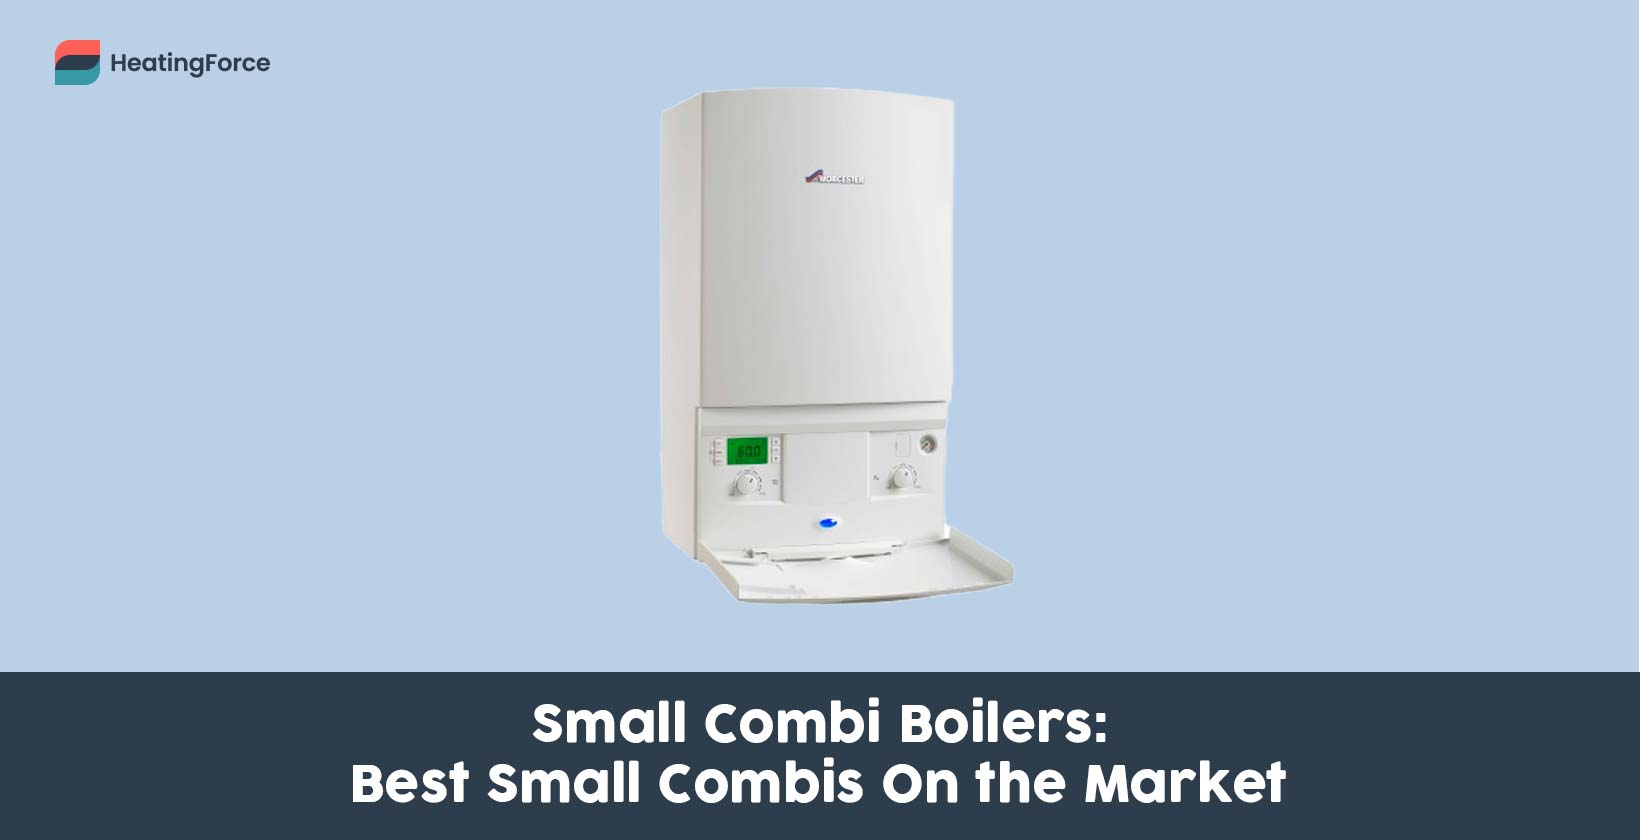 Small combi boilers